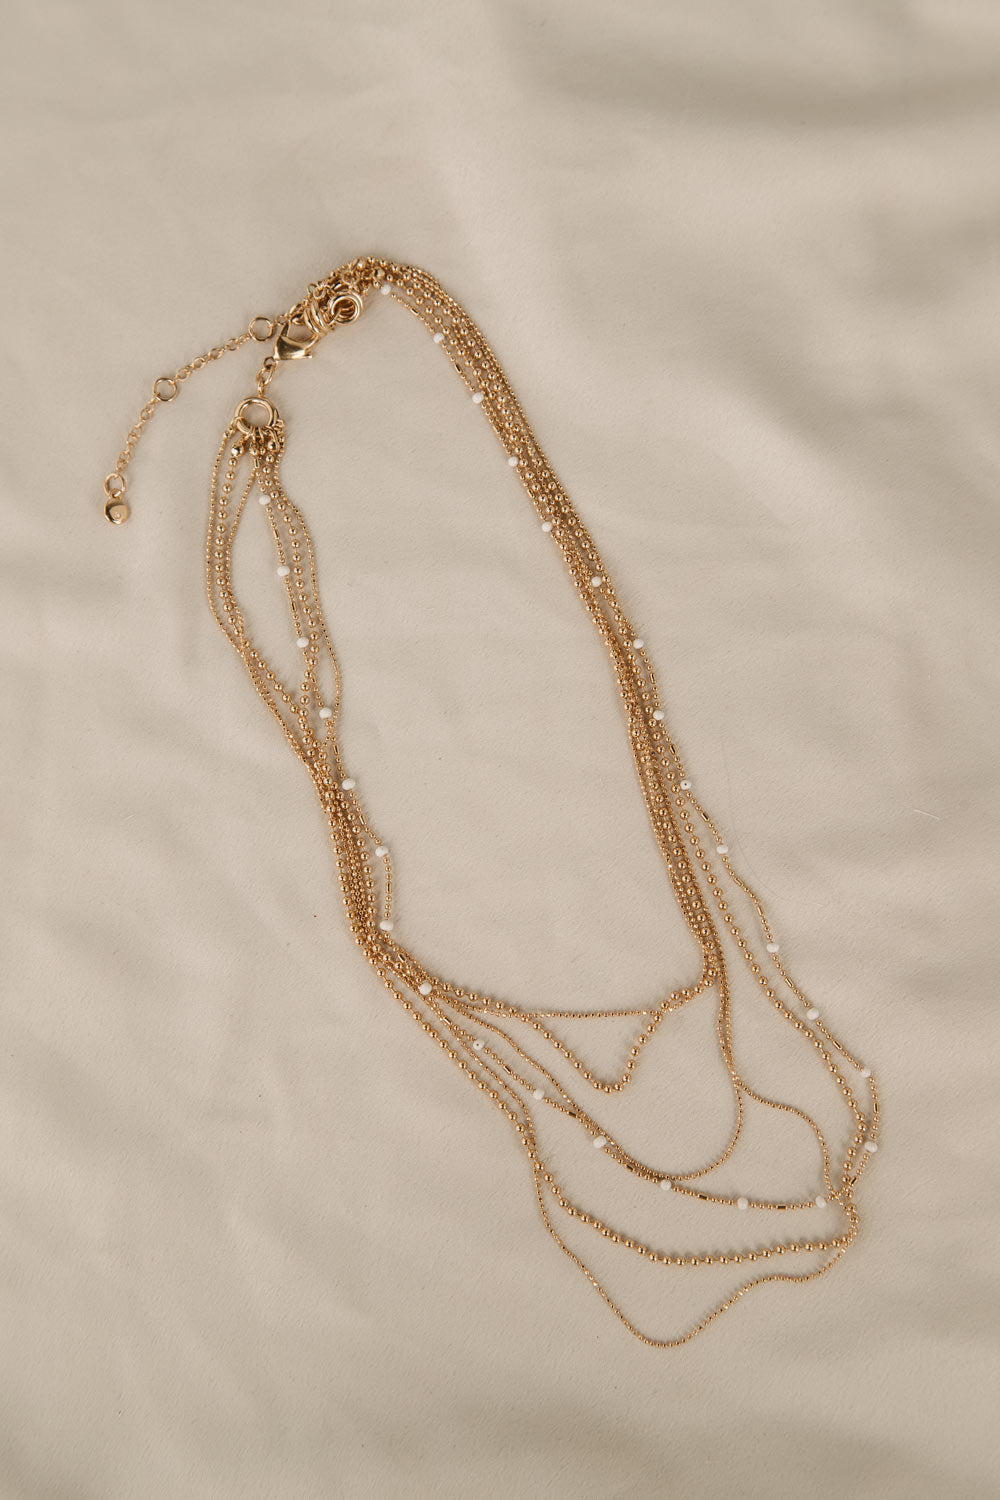 Black Diamond Jewlery - Women's Multi Strand Fine Chain Necklace in Gold